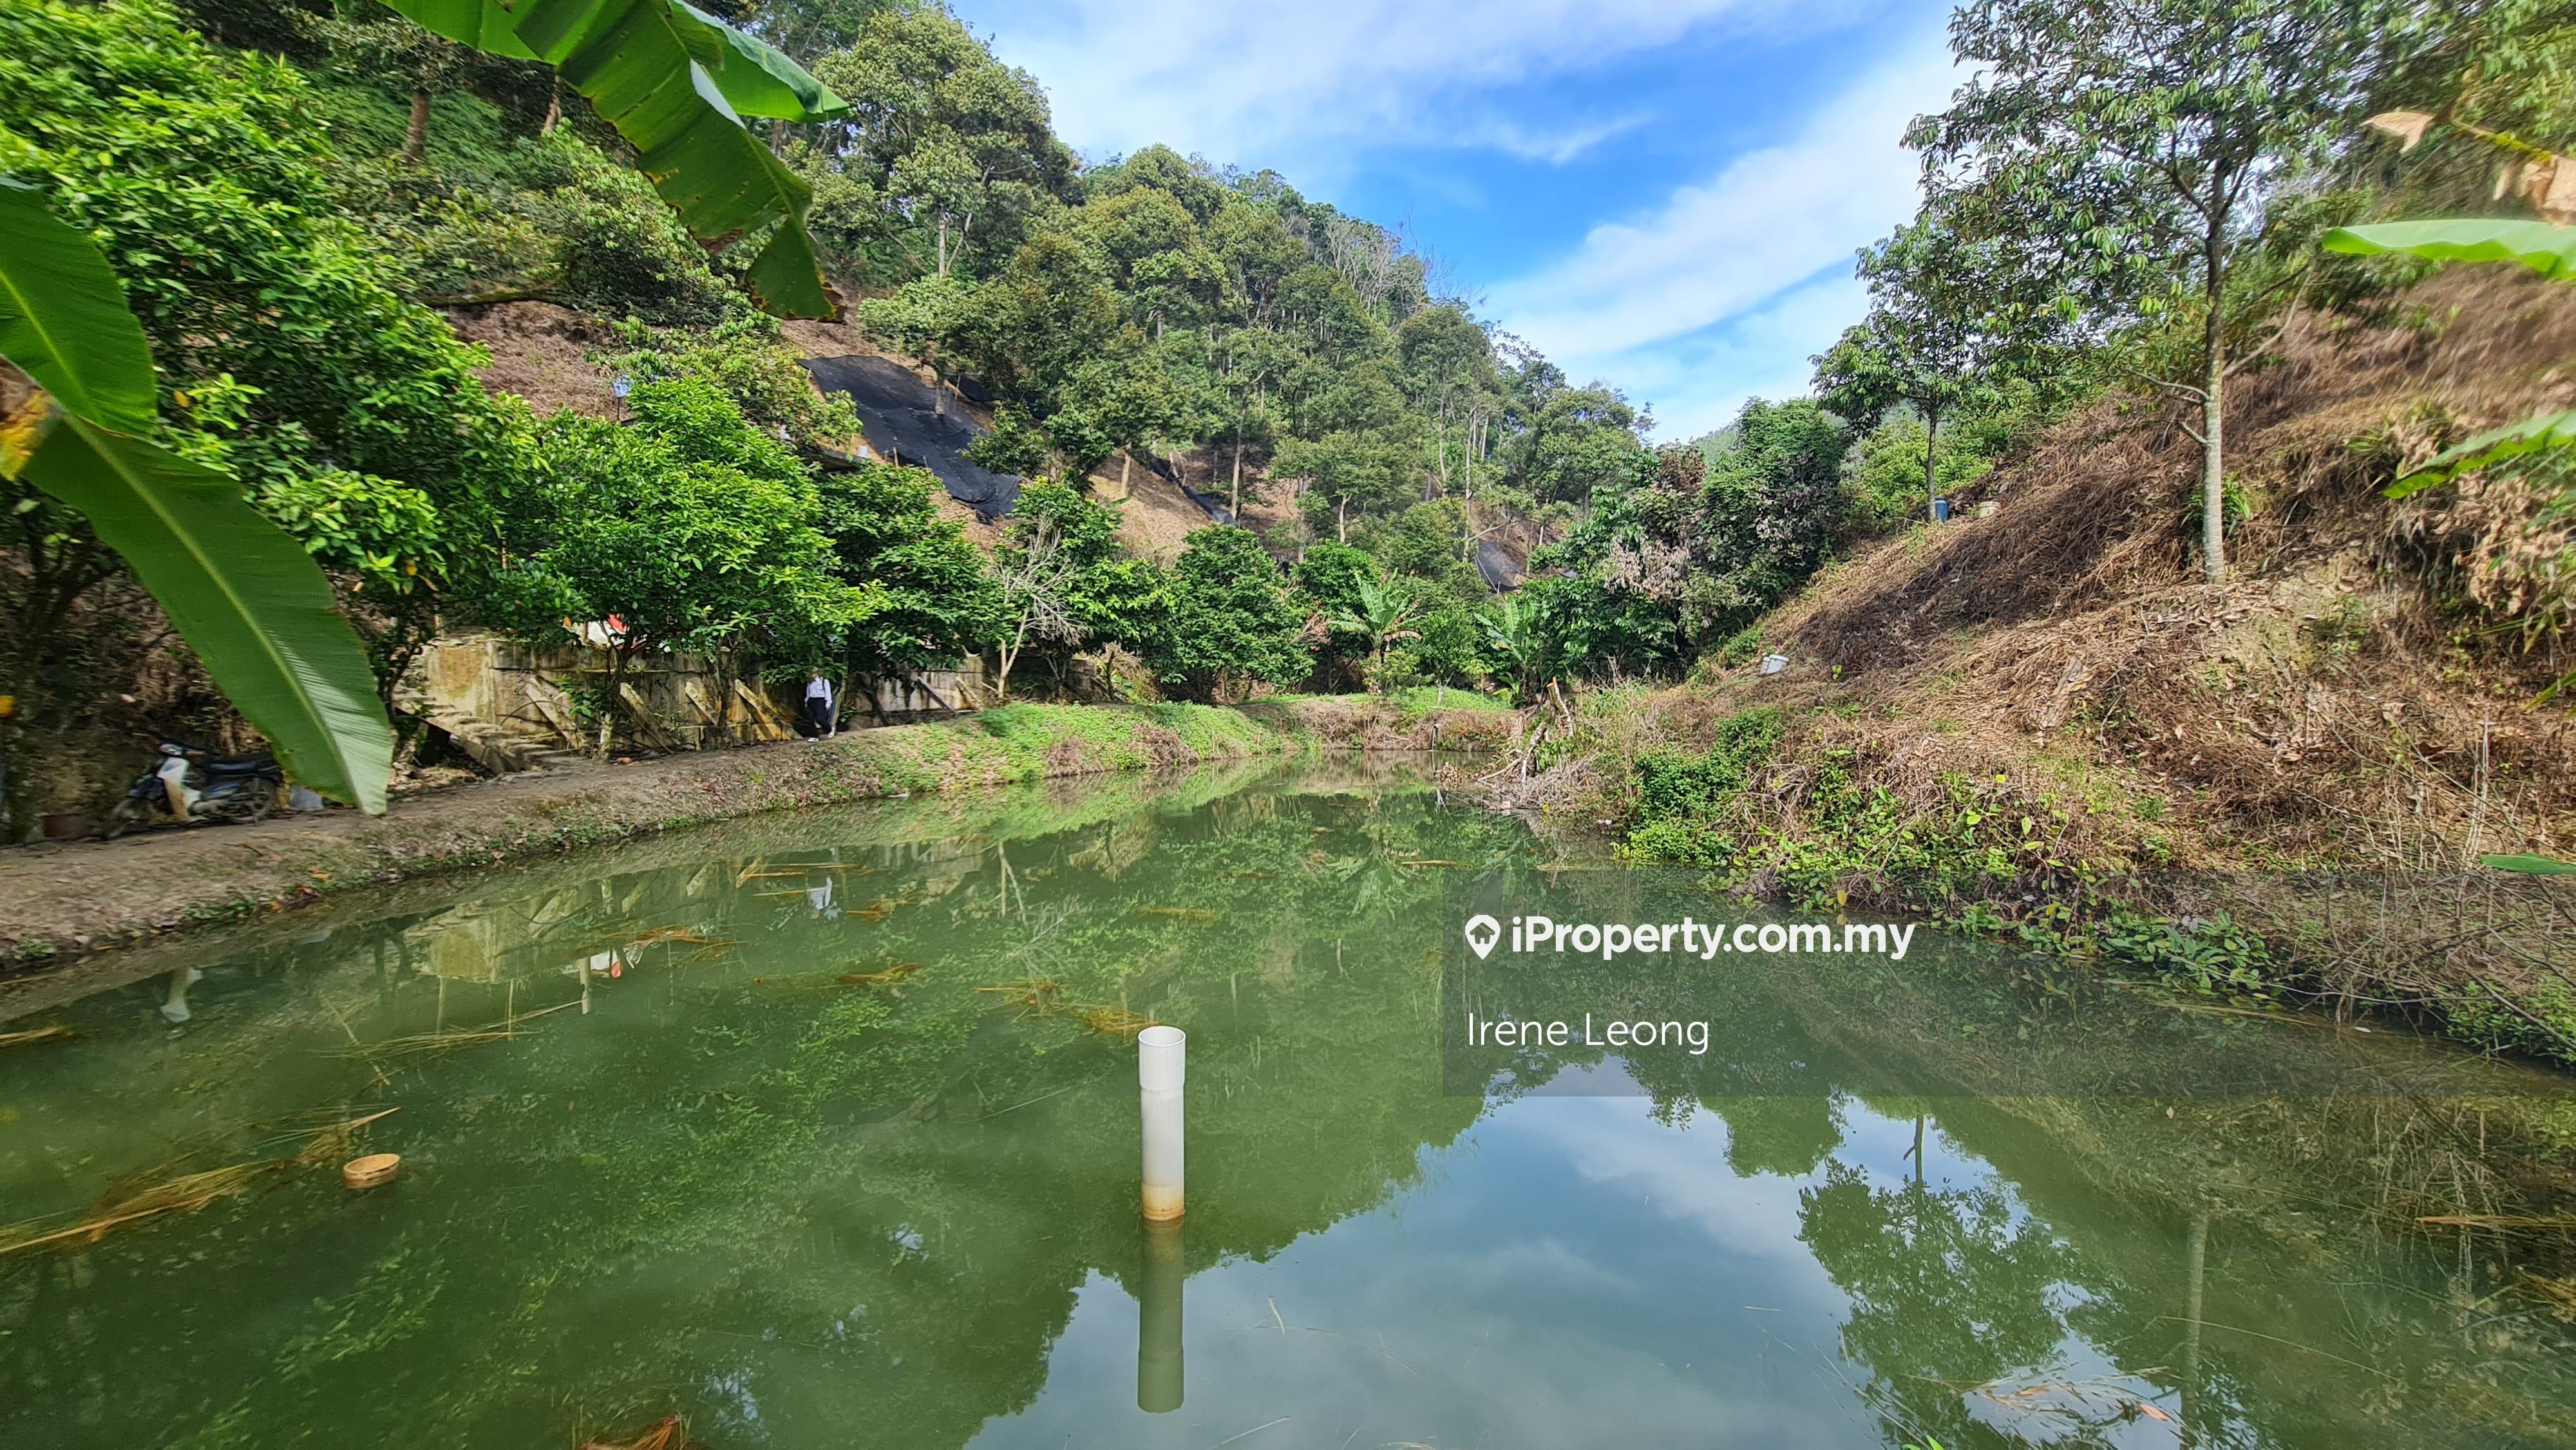 37 acres Bentong (Taman Saga) Vacant + Durian Land For Sale, Bentong